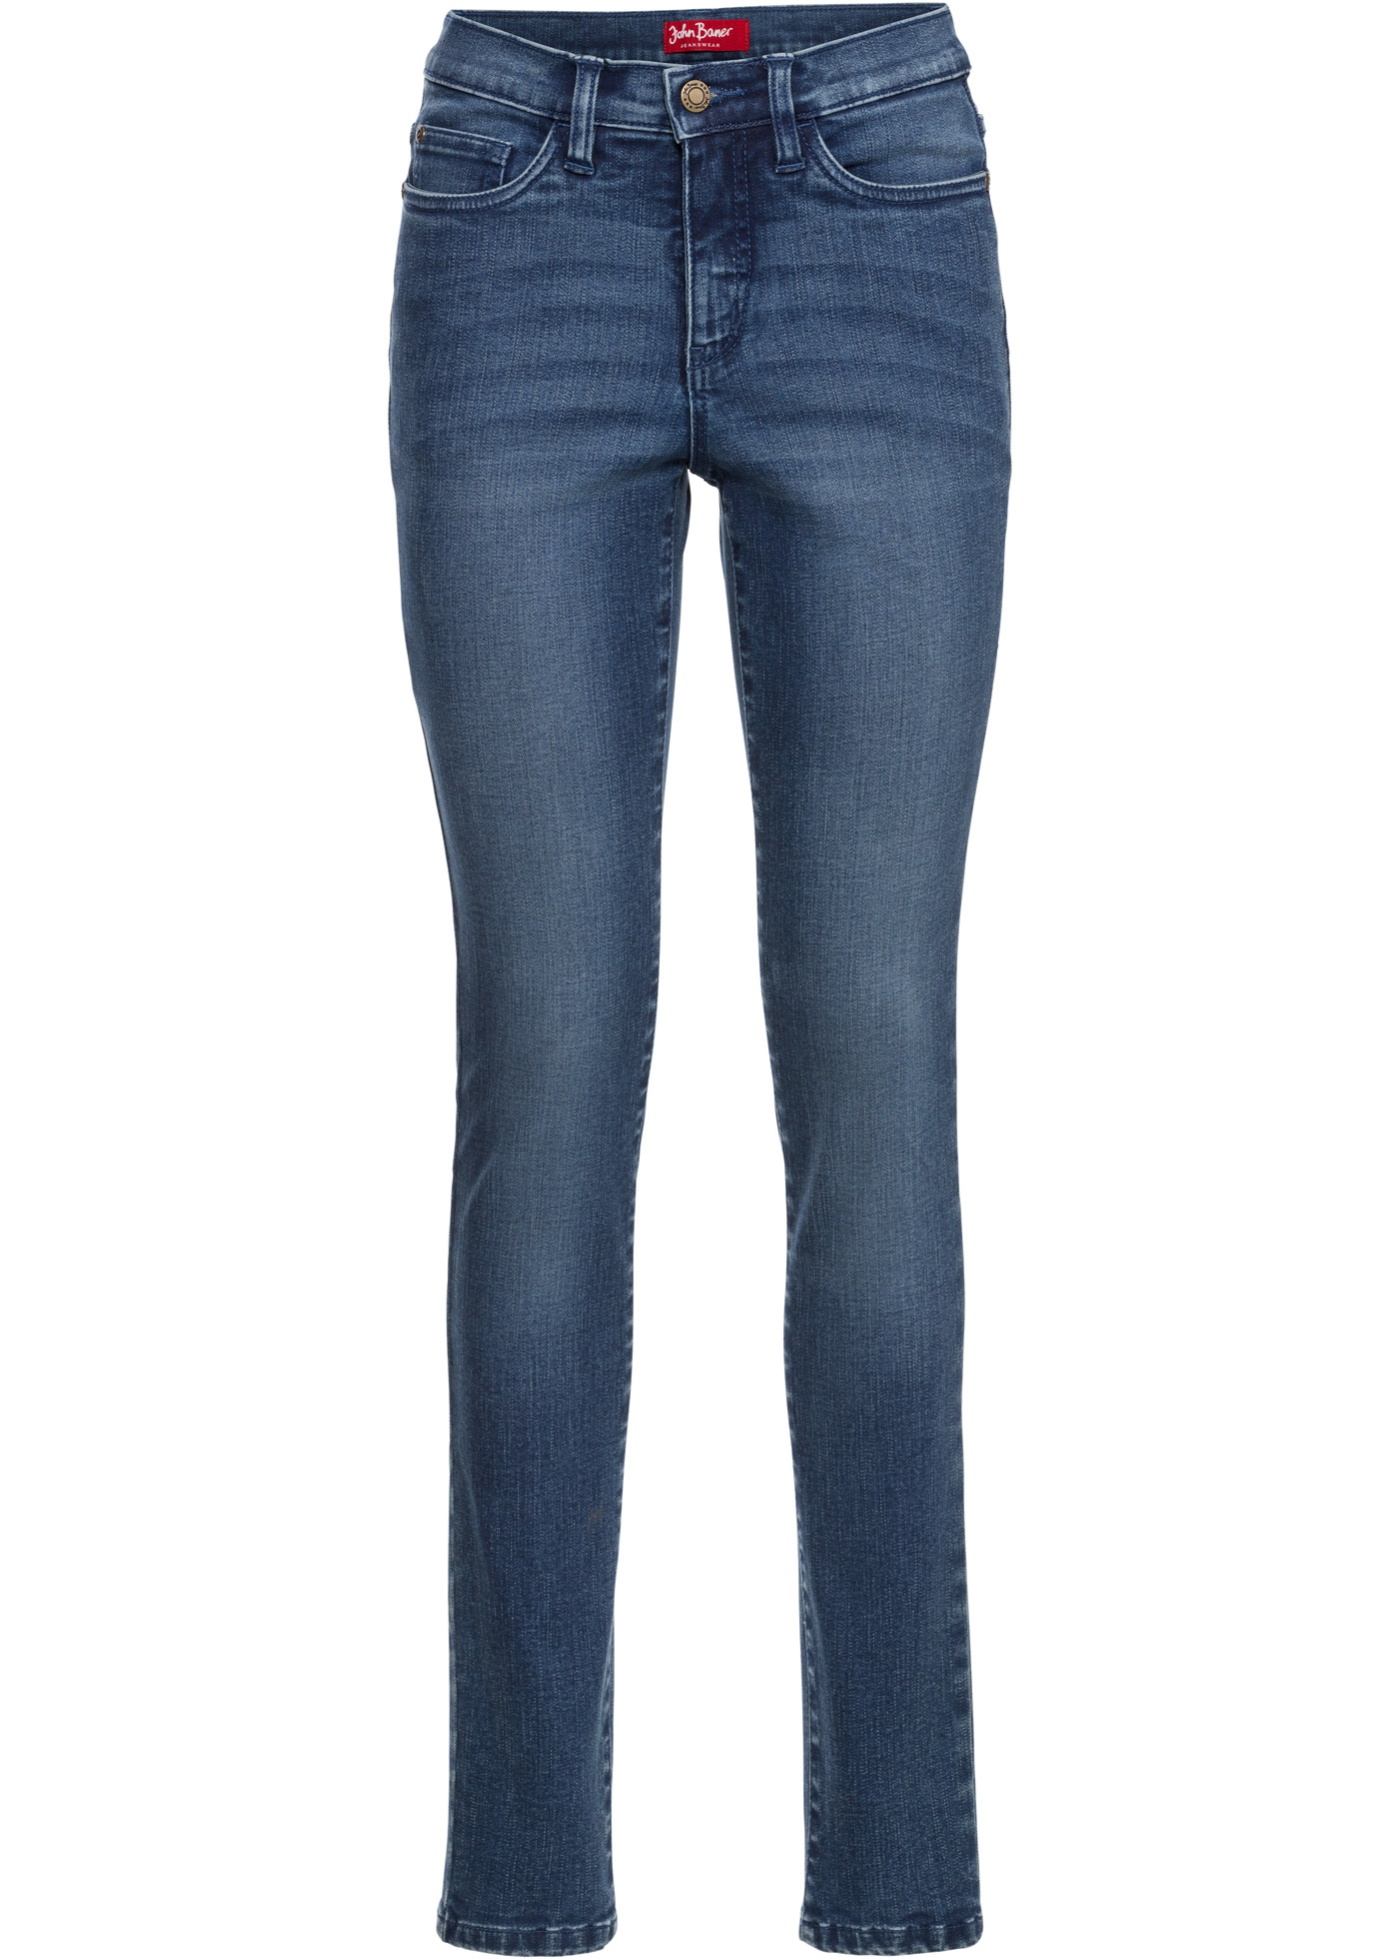 Corrigerende ultra soft jeans